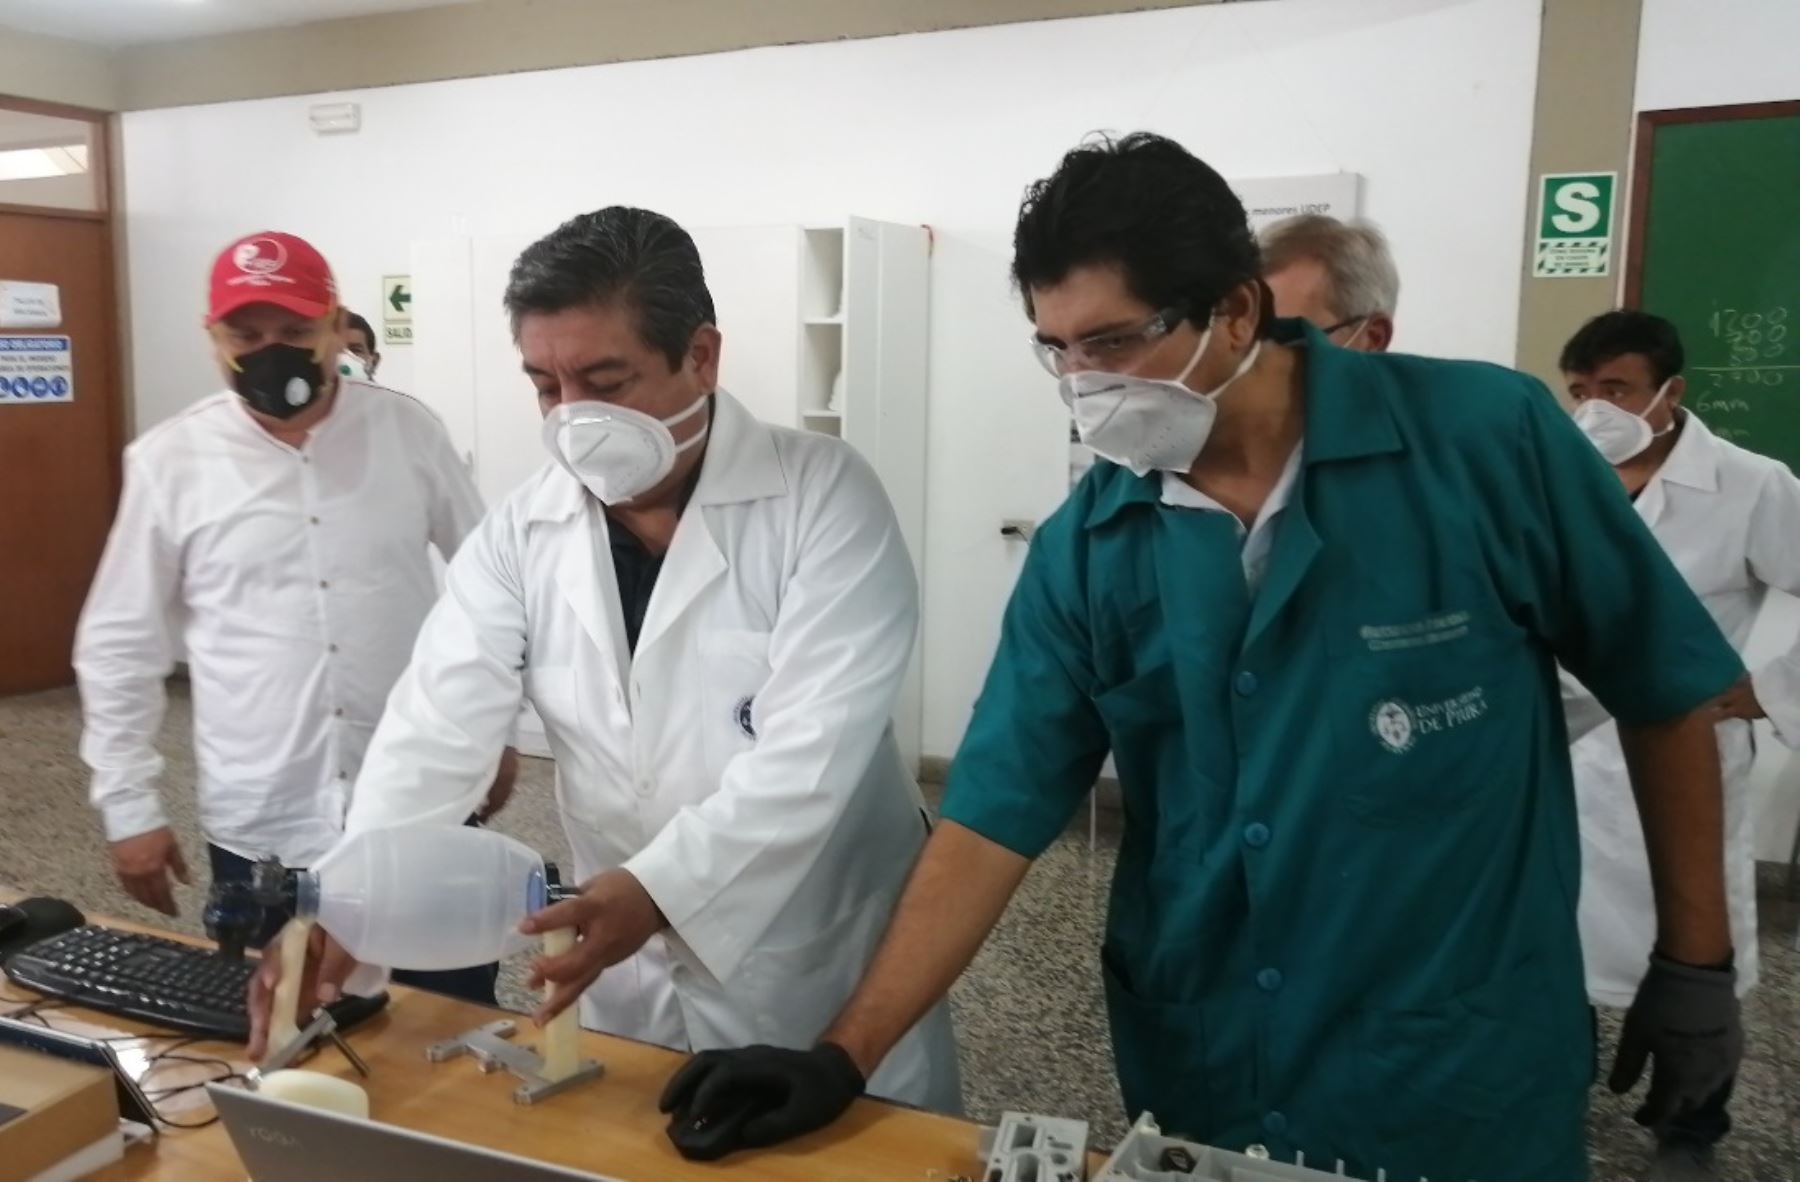 Ingenieros de Universidad de Piura mejoran prototipo de respirador mecánico gracias a sugerencias médicas y esperan culminar equipo para construir otros nueve respiradores.